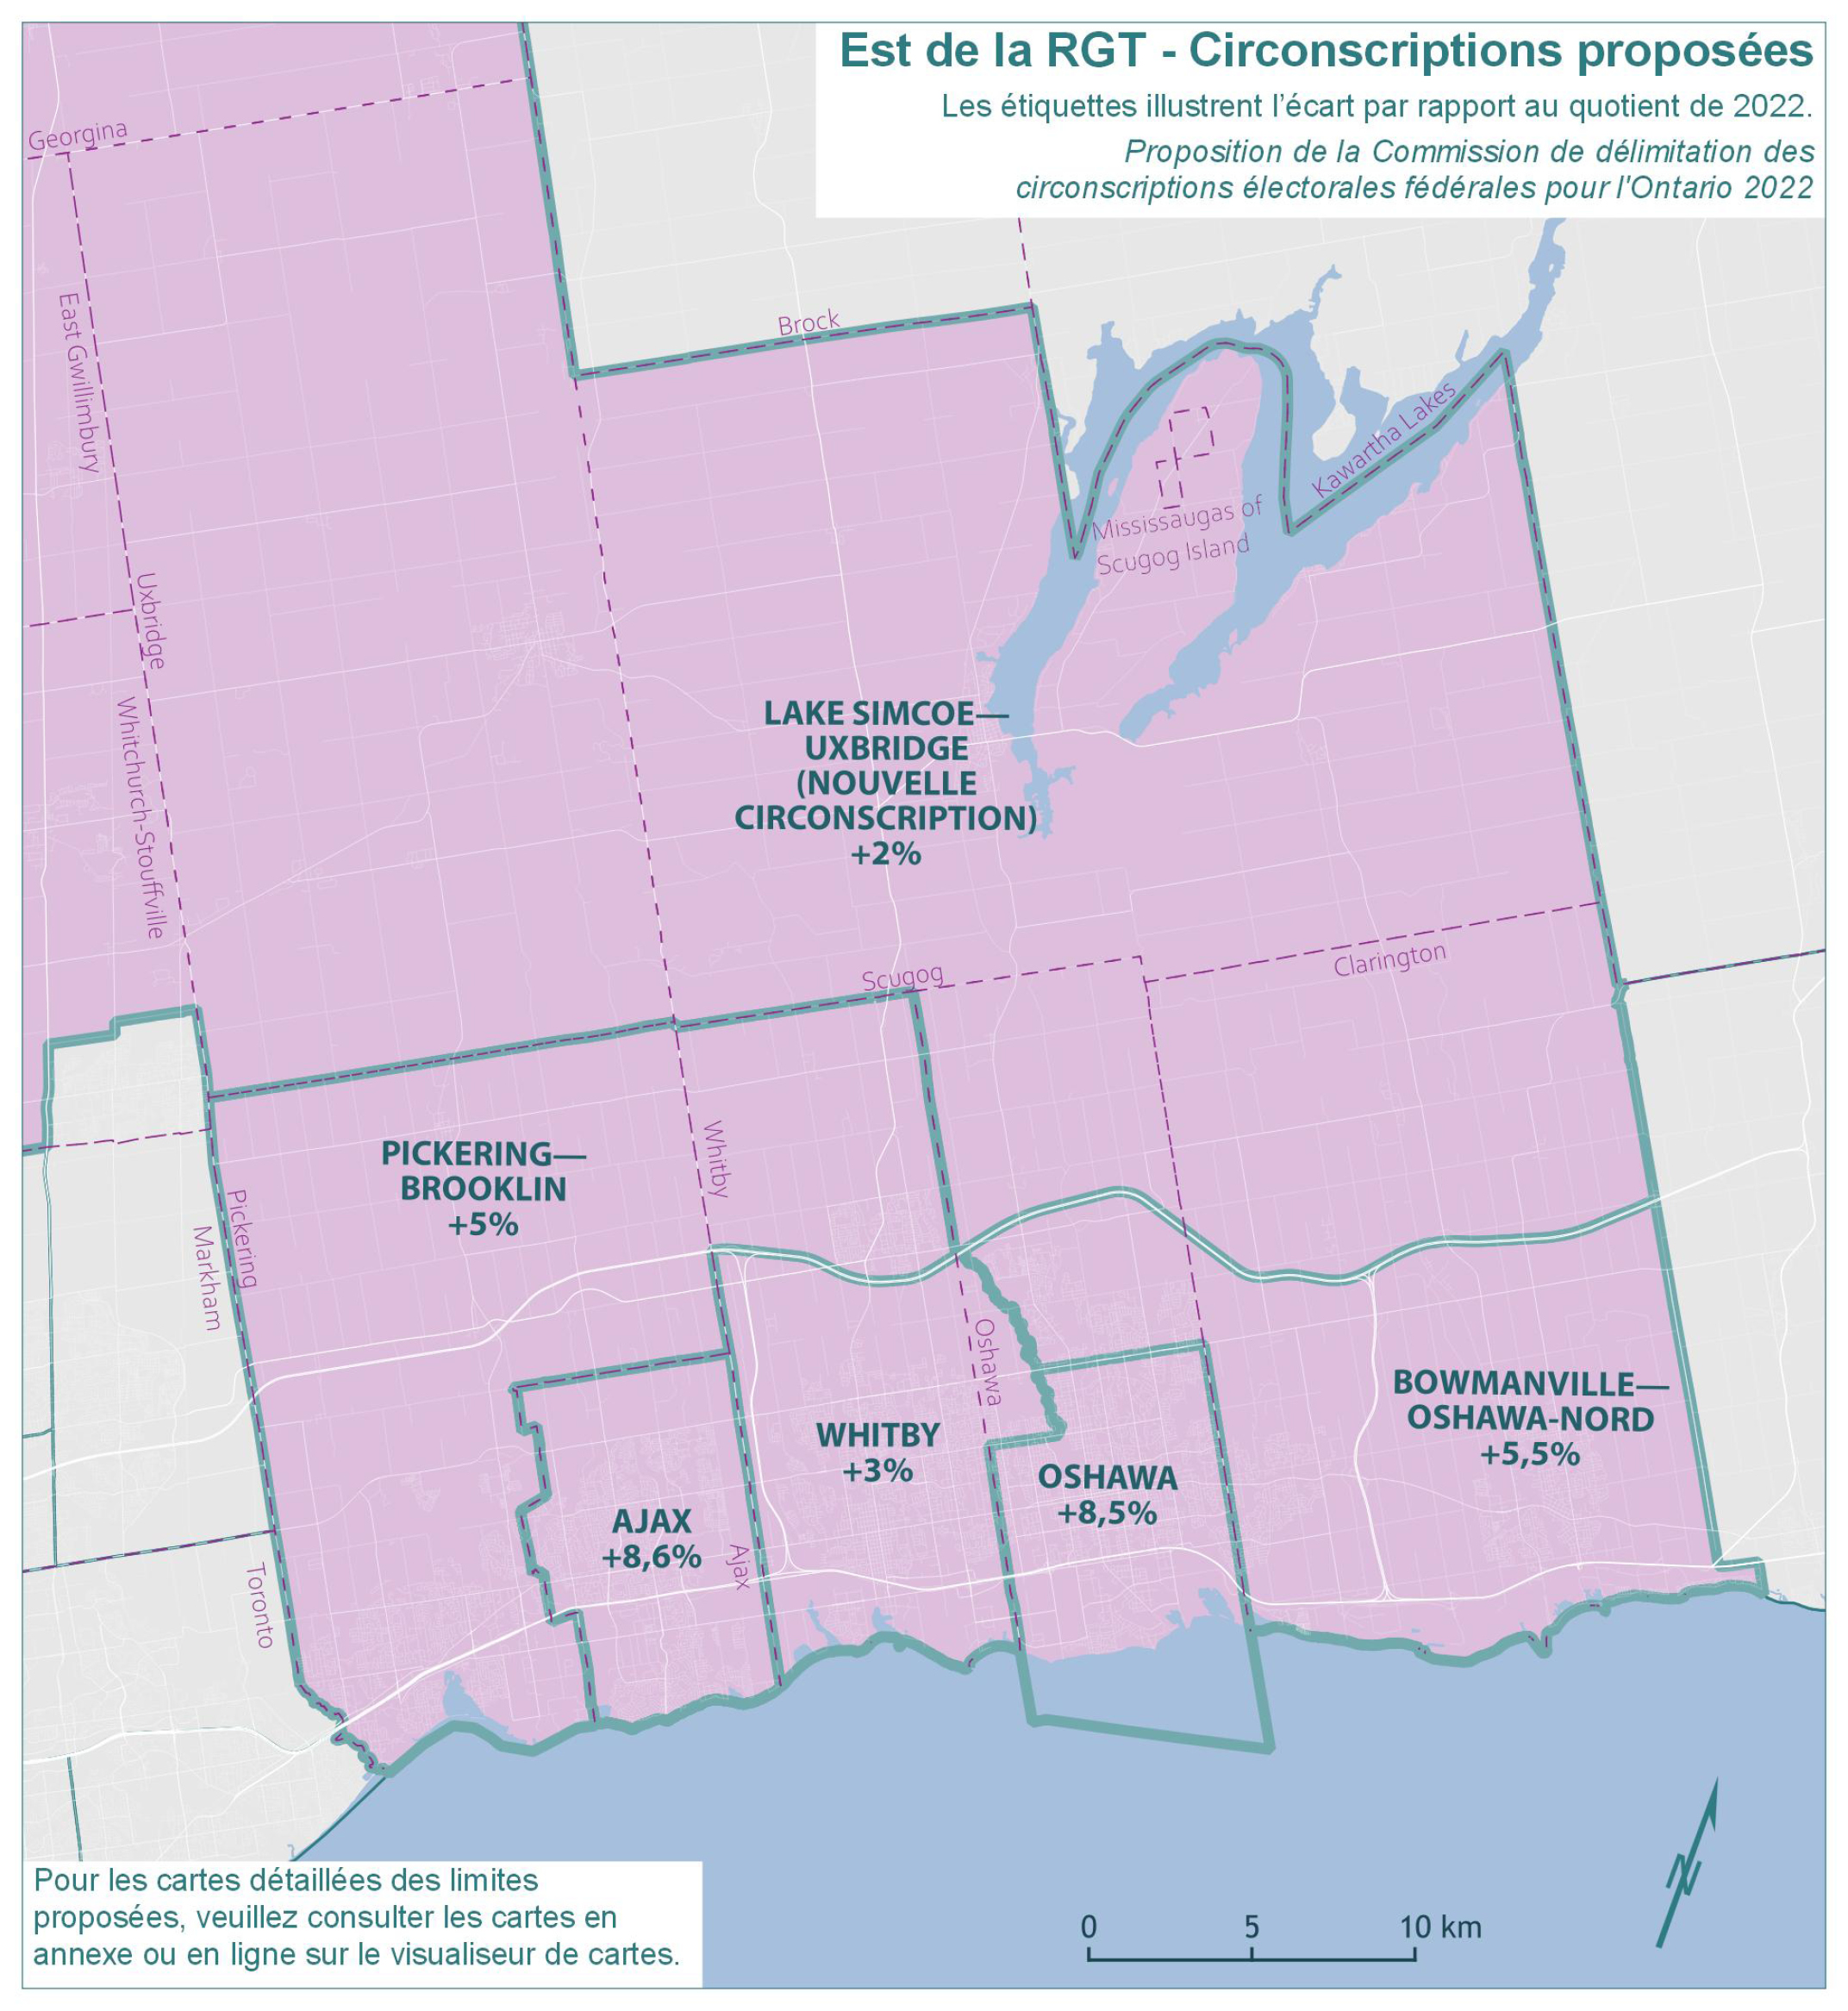 Est de la région du Grand Toronto - Circonscriptions proposées 